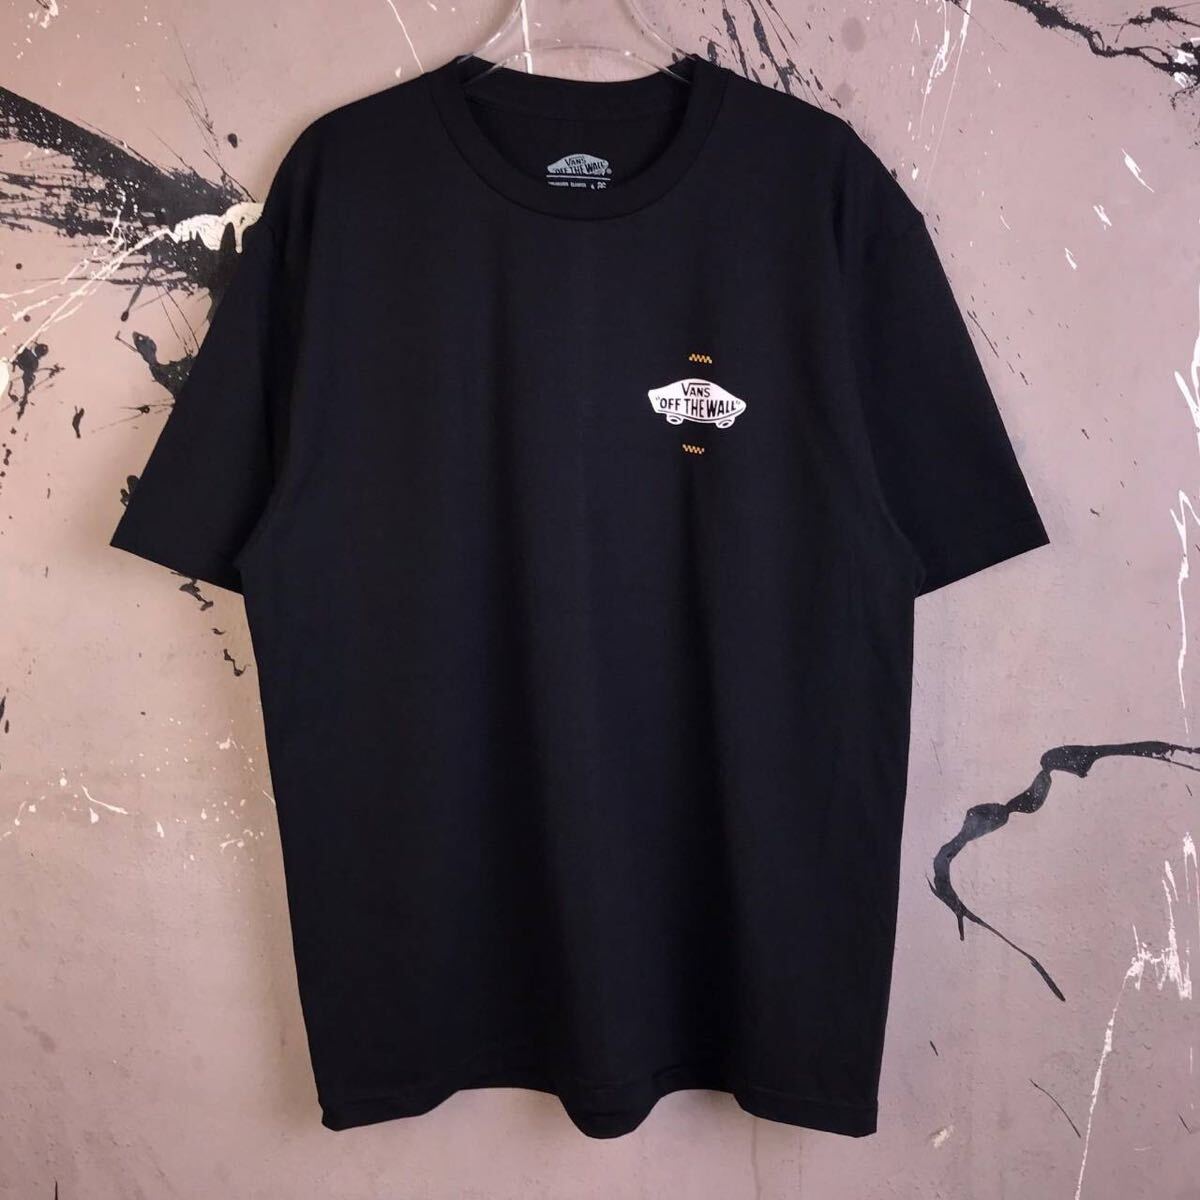 Tシャツ 半袖 バンズ VANS ストリート系 ロサンゼルス スケボー スケードボード カリフォルニア 黒 XLサイズ